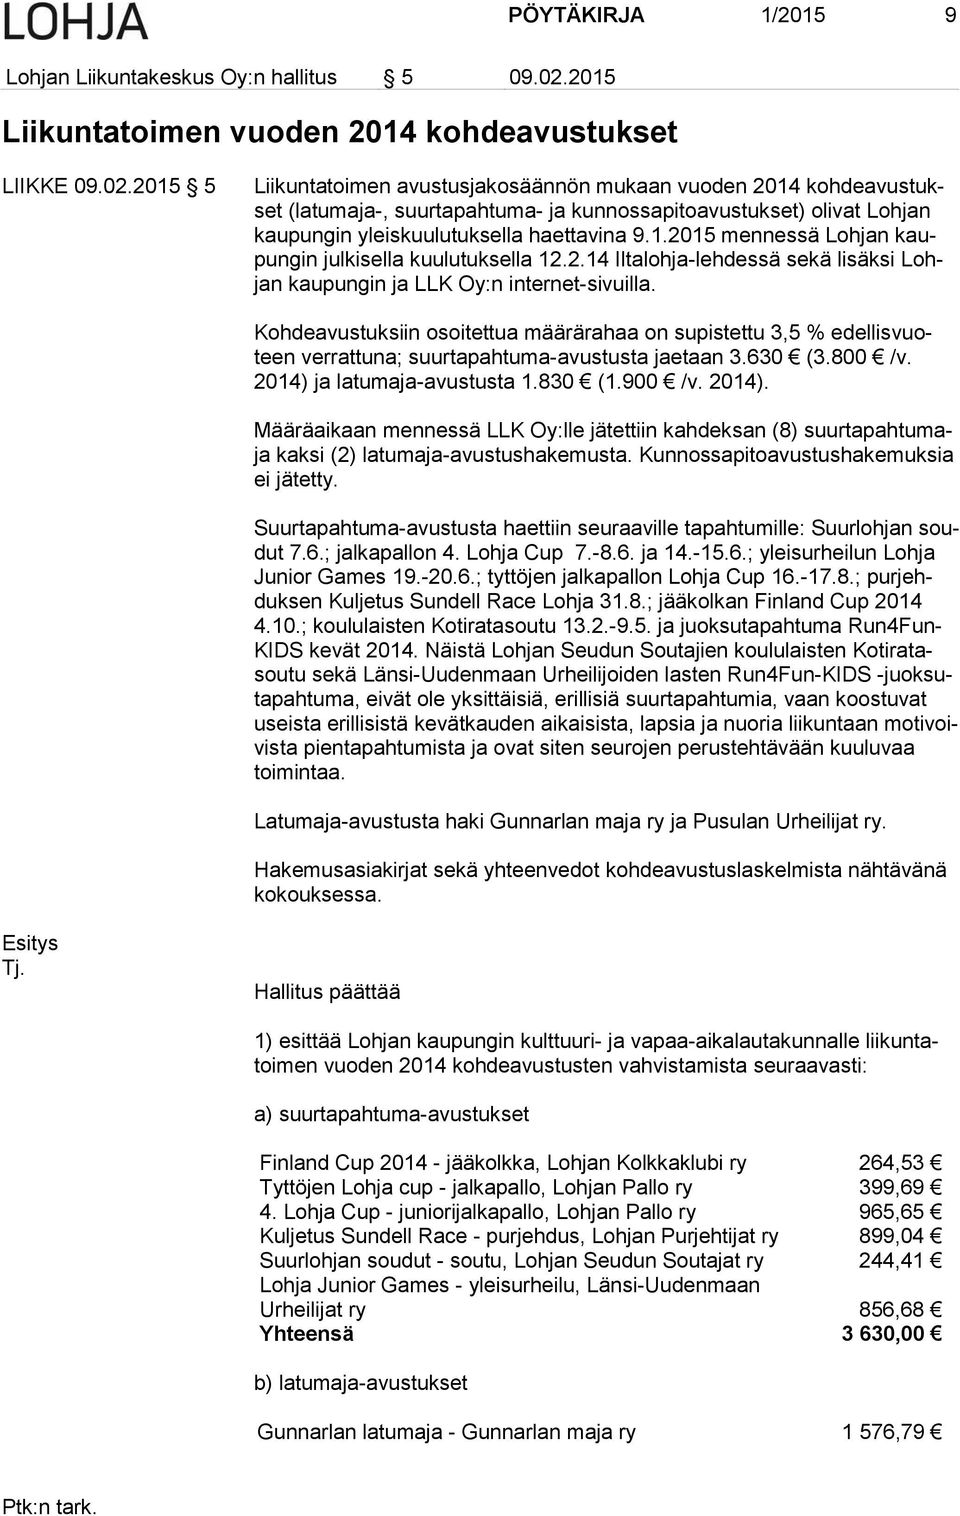 2015 5 Liikuntatoimen avustusjakosäännön mukaan vuoden 2014 kohdeavustukset (latumaja-, suurtapahtuma- ja kunnossapitoavustukset) olivat Lohjan kaupungin yleiskuulutuksella haettavina 9.1.2015 mennessä Lohjan kaupungin julkisella kuulutuksella 12.